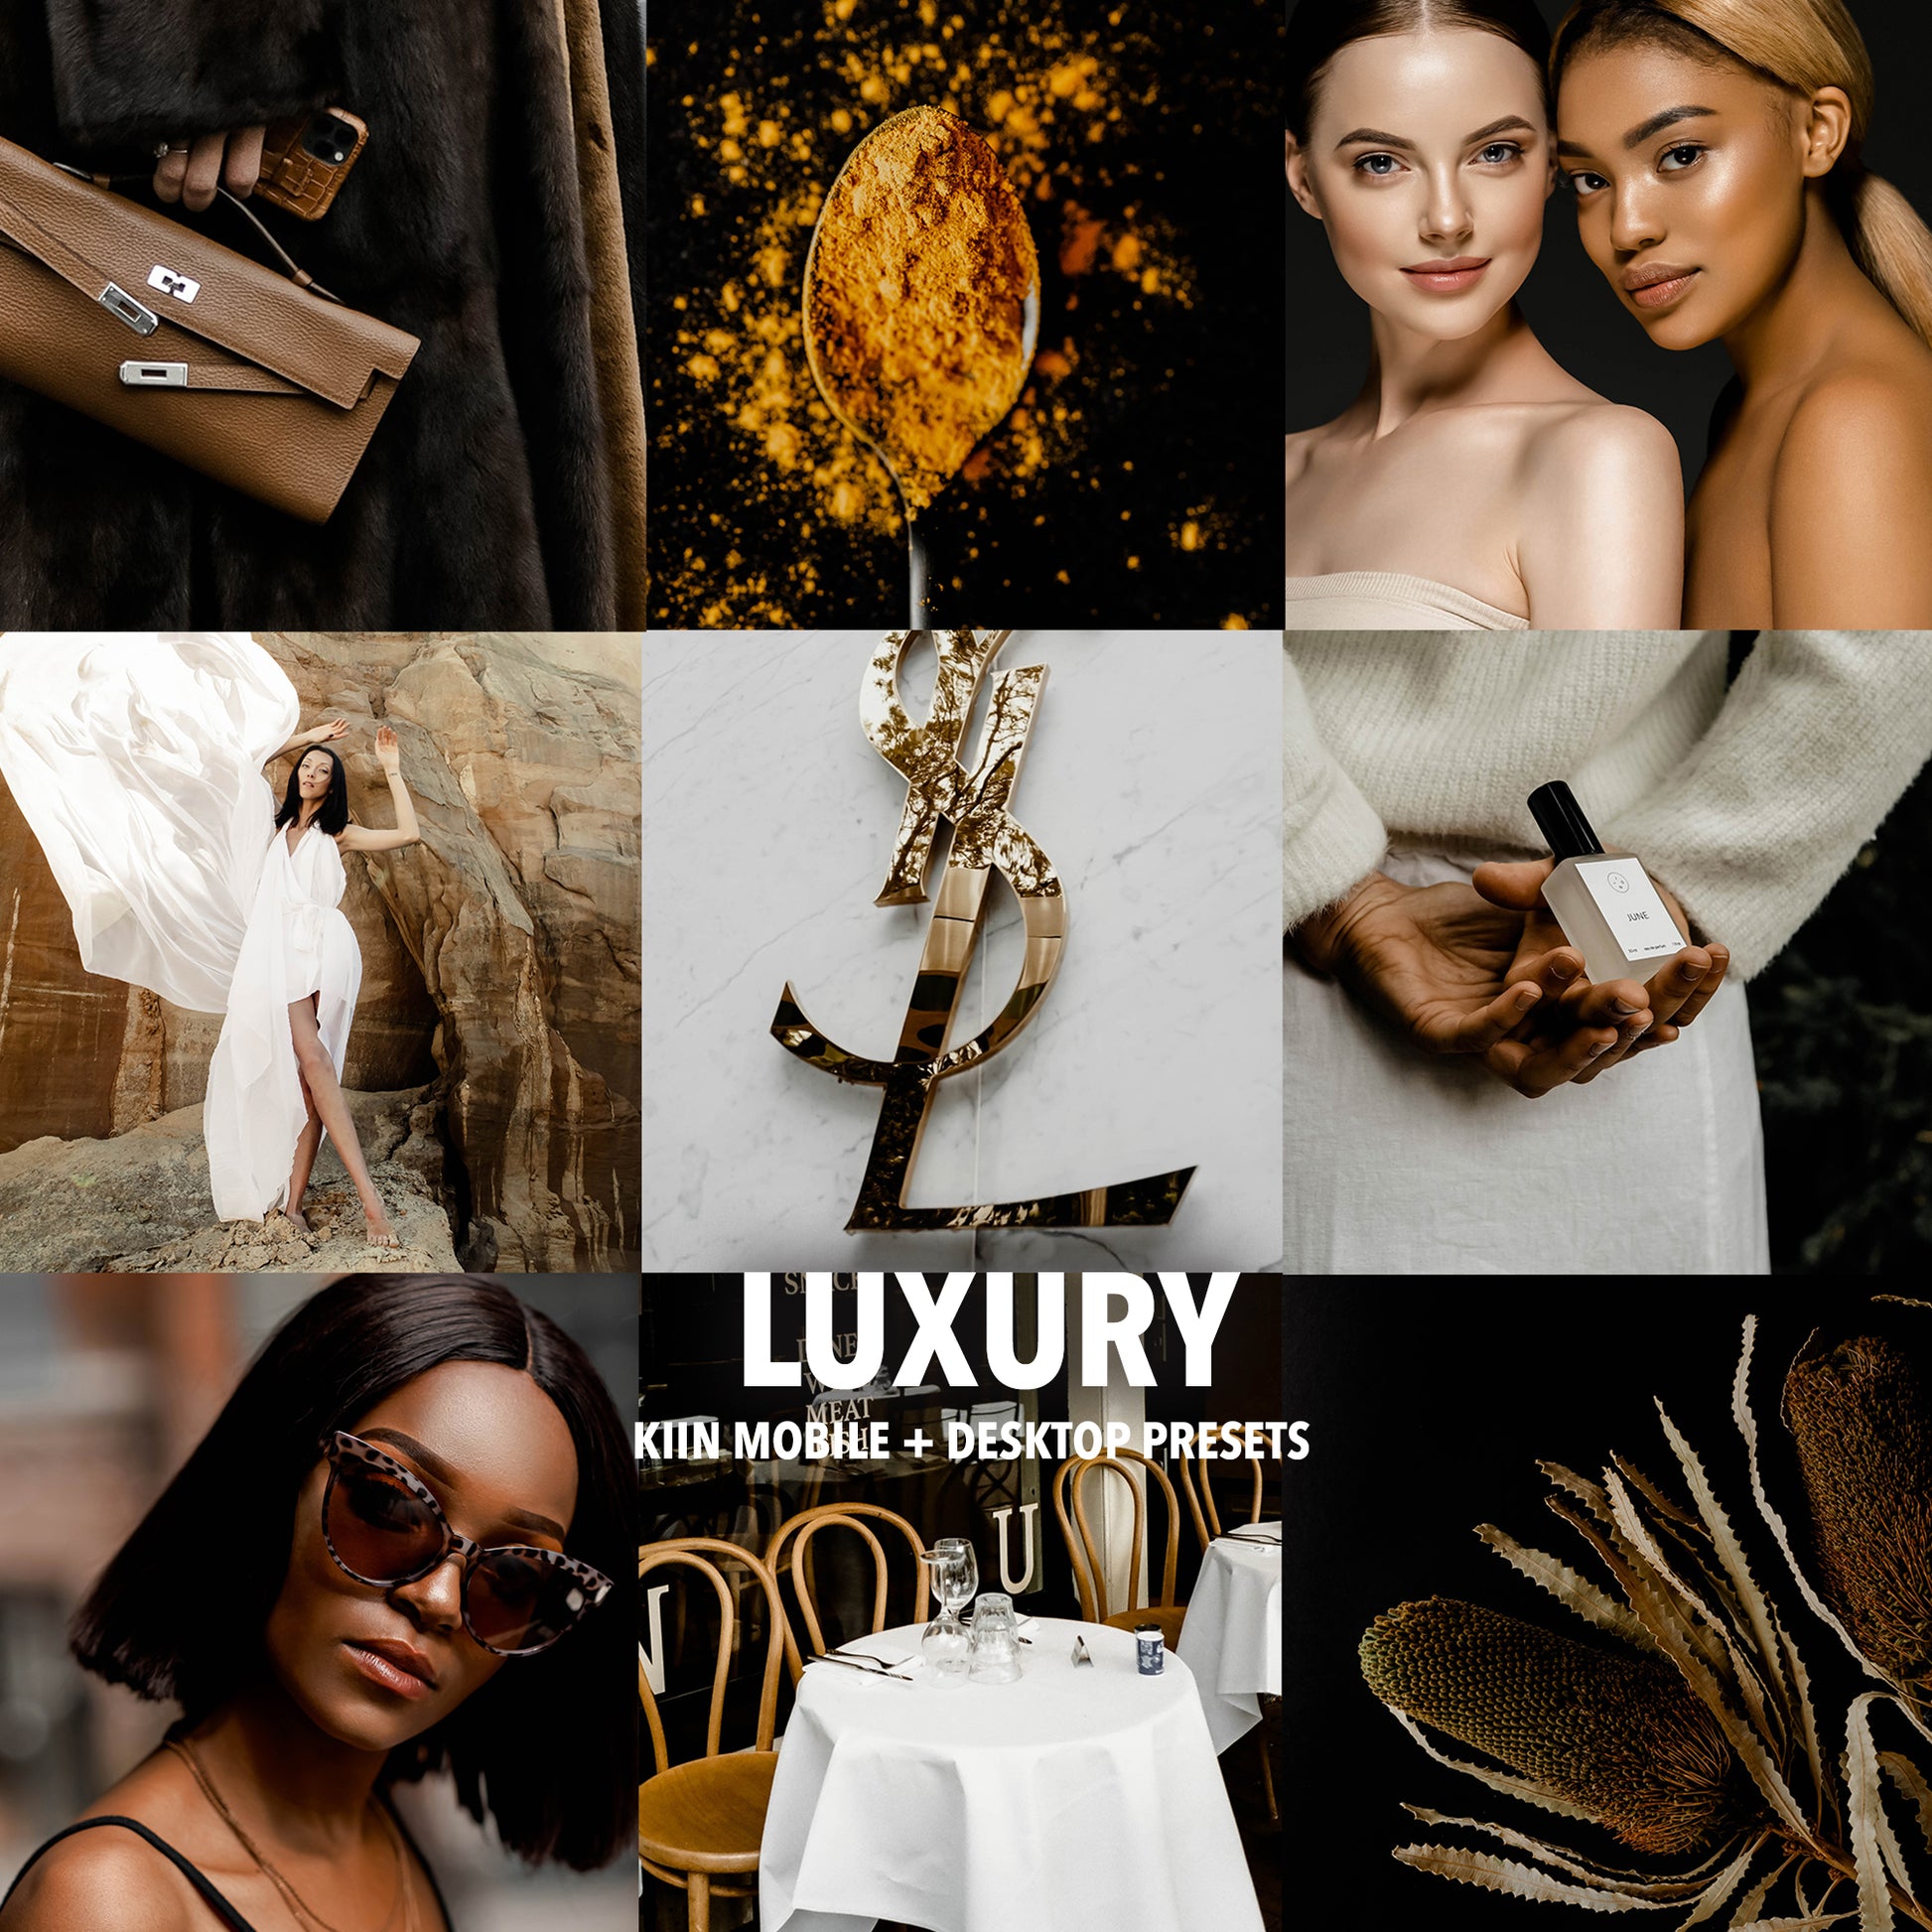 aesthetic luxury items